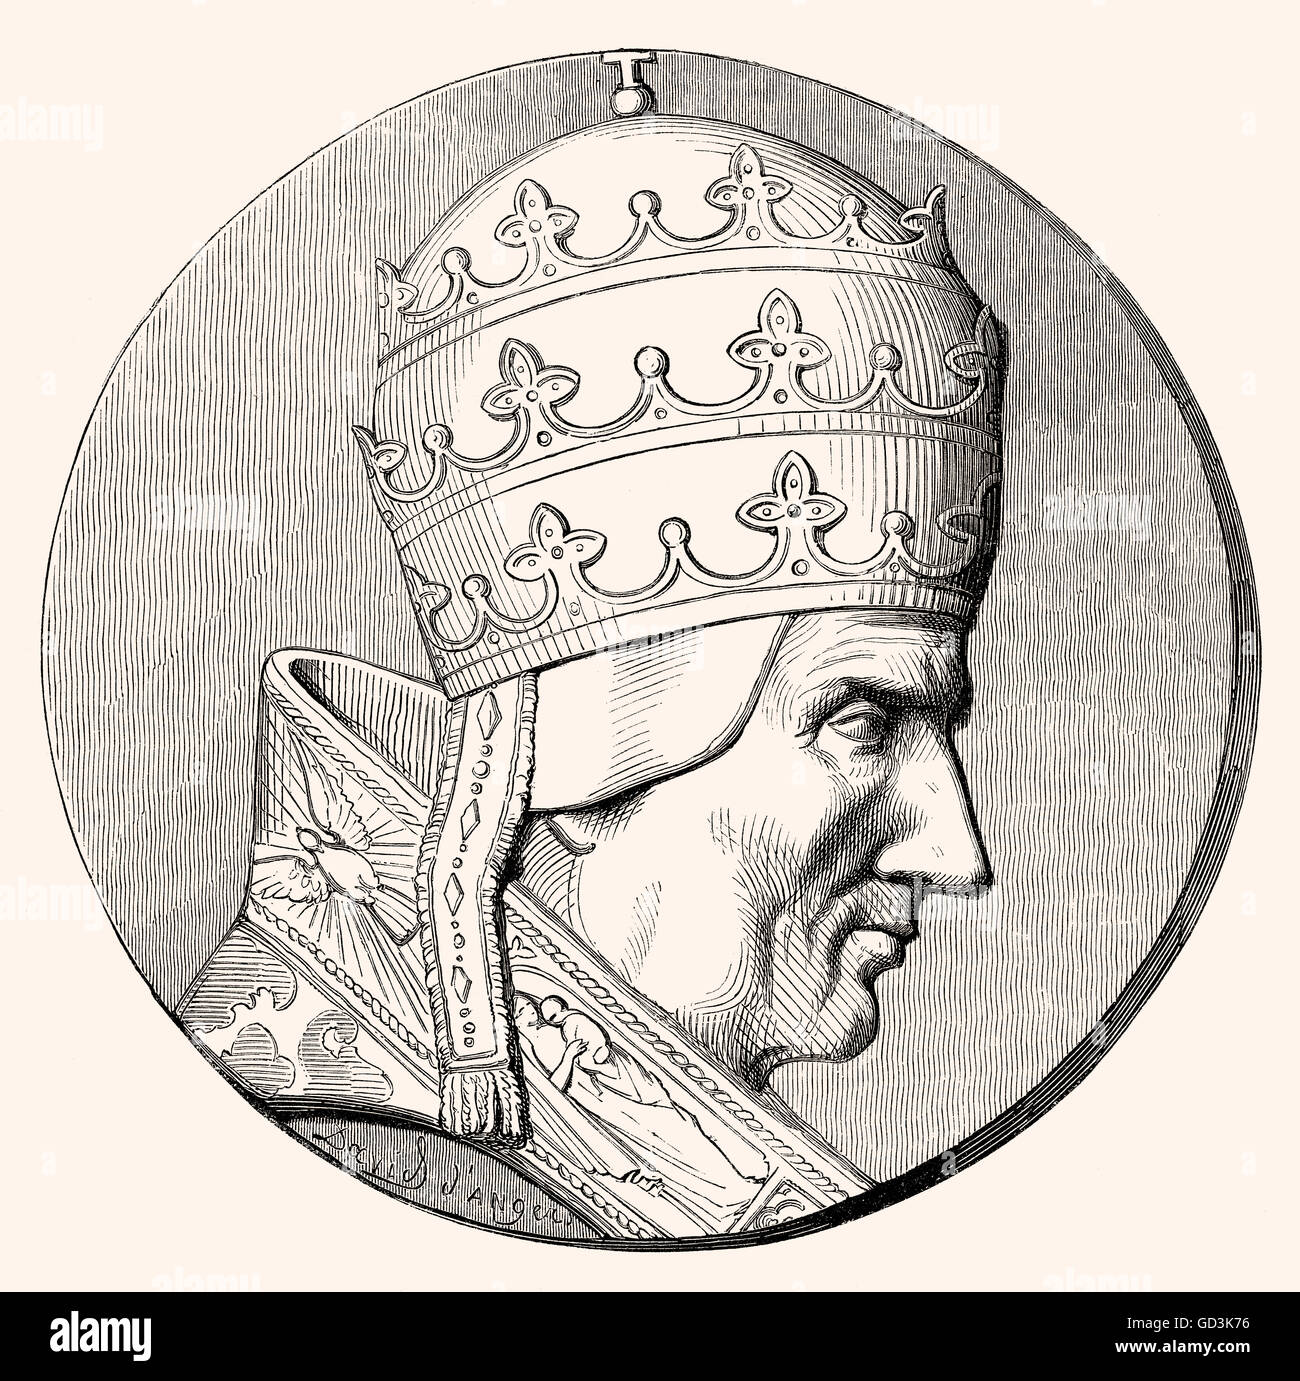 Le pape Sylvestre II ou Silvester II, né Gerbert d'Aurillac, Gerbert d'Aurillac, ch. 946 - 1003, pape de 999 à 1003 Banque D'Images